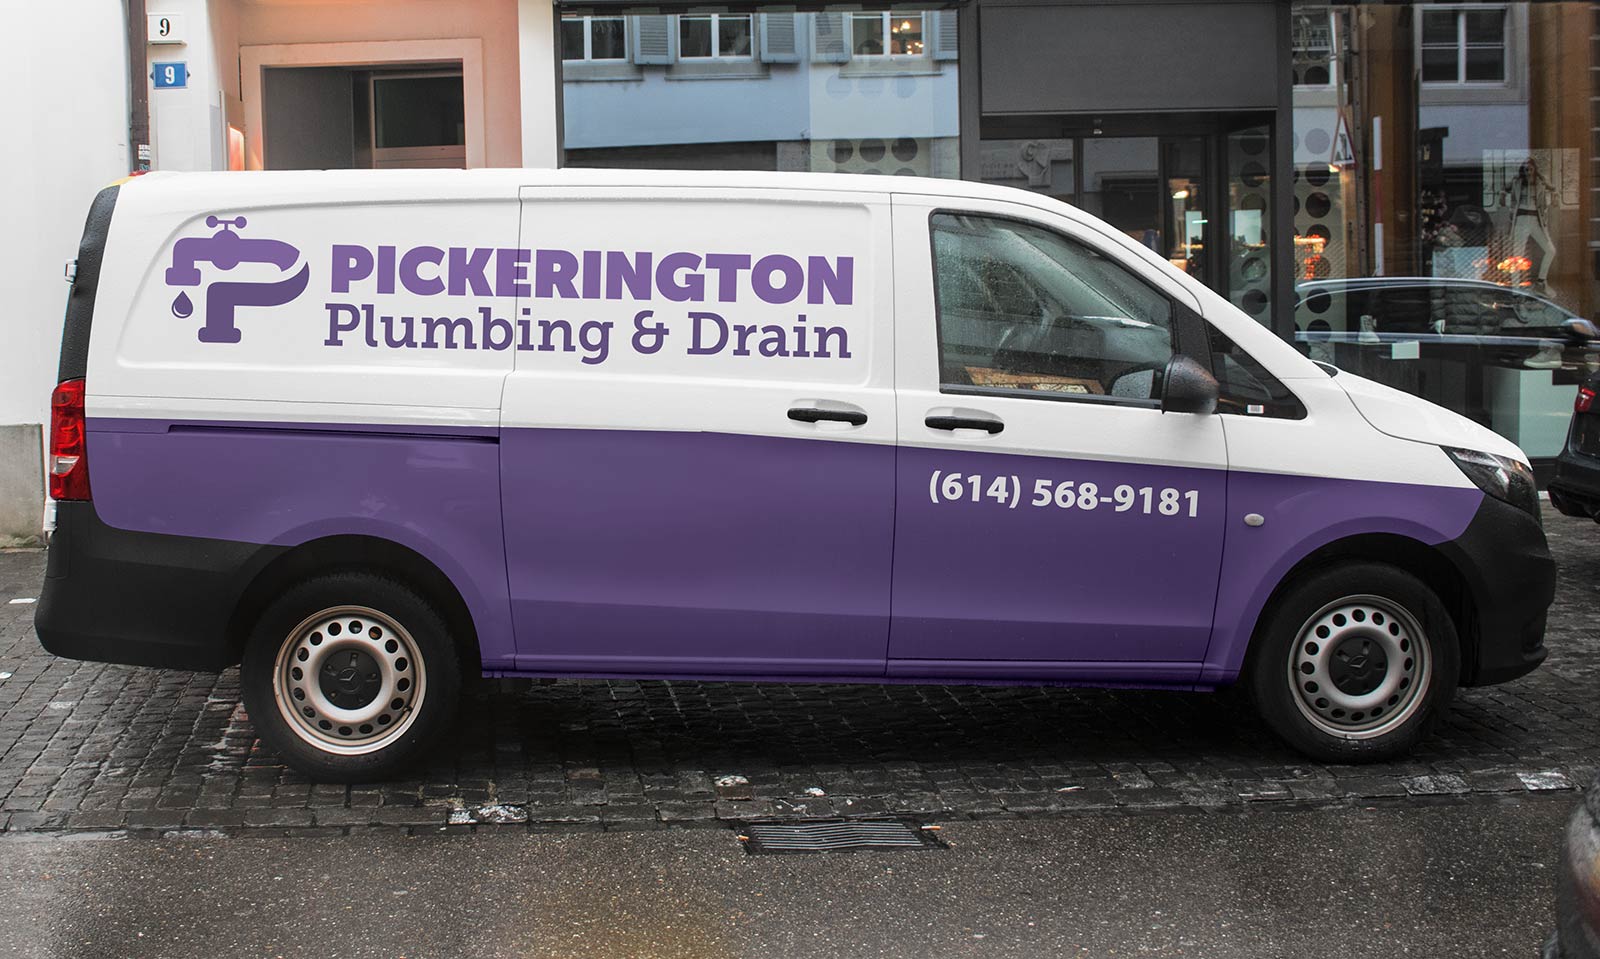 Pickerington Plumbing & Drain